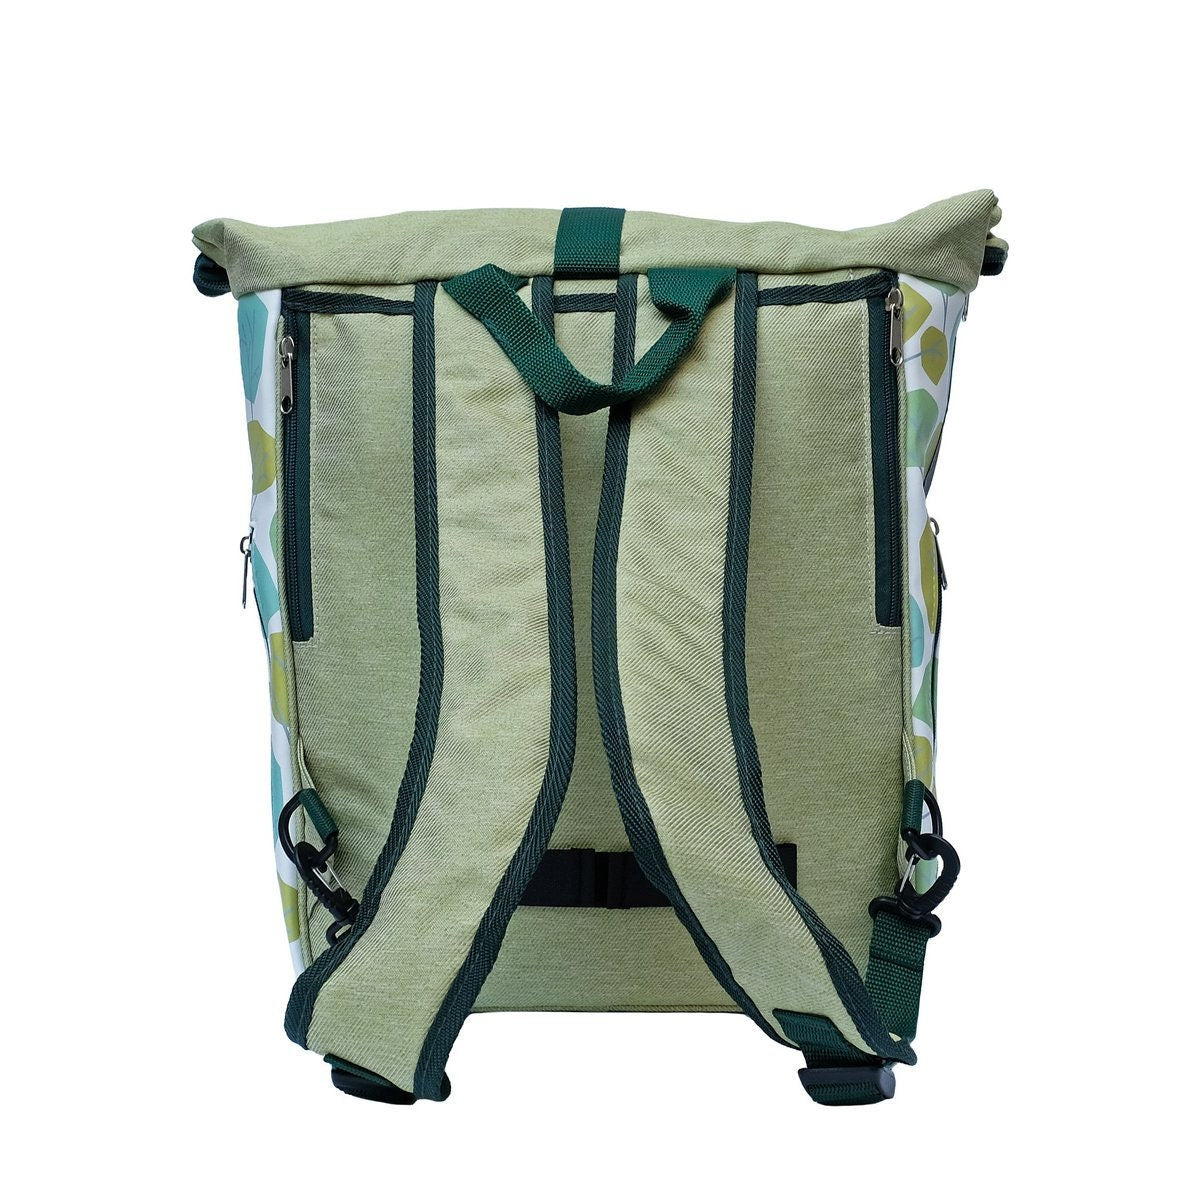 IKURI KOMBI Fahrradtasche / Rucksack mit Befestigung Wasserdicht Gepäcktasche Satteltasche Design BOSQUE